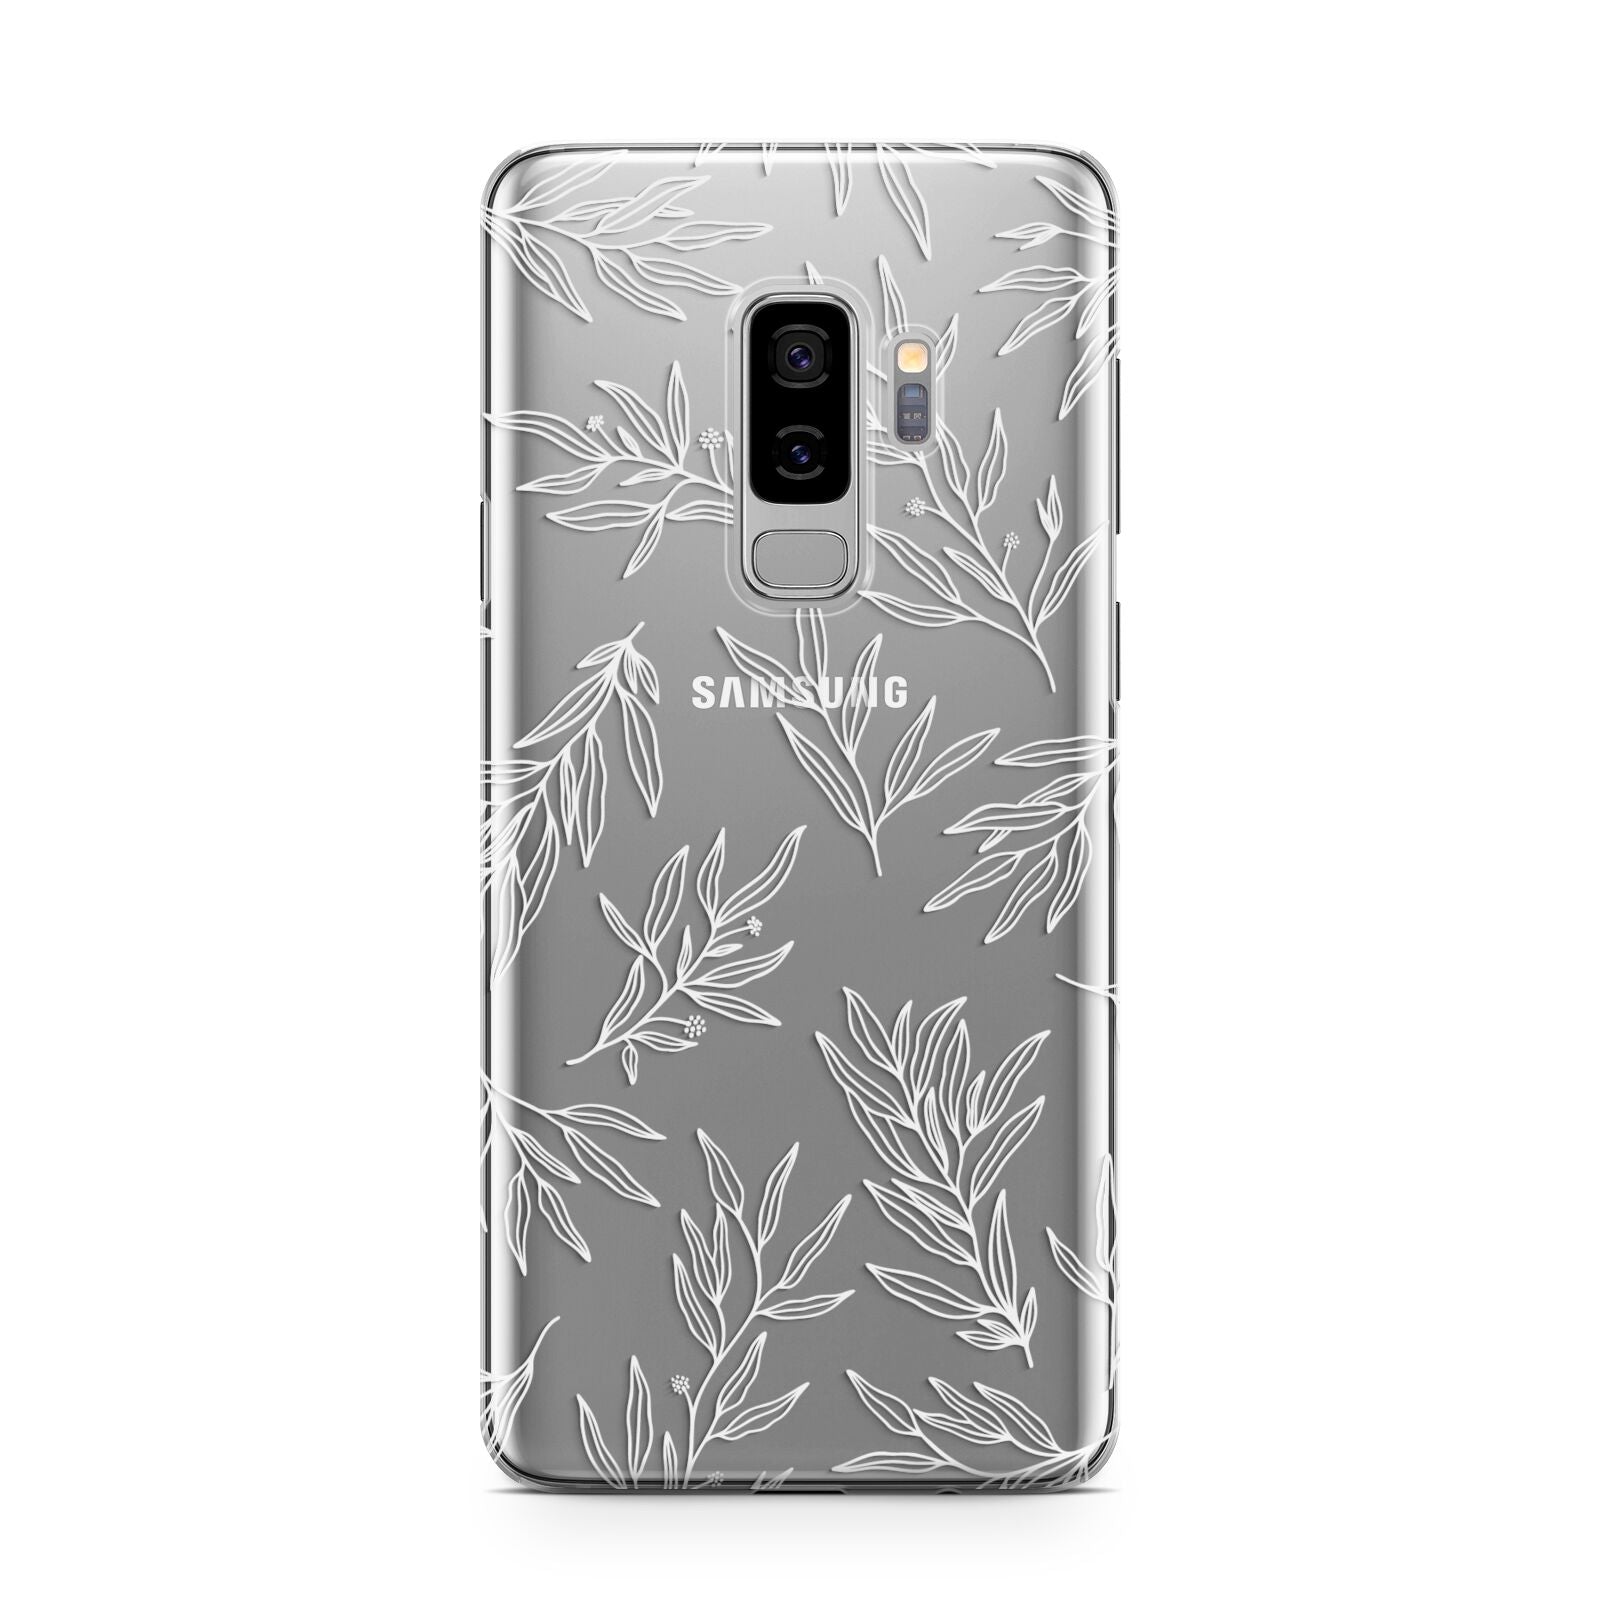 Botanical Leaf Samsung Galaxy S9 Plus Case on Silver phone